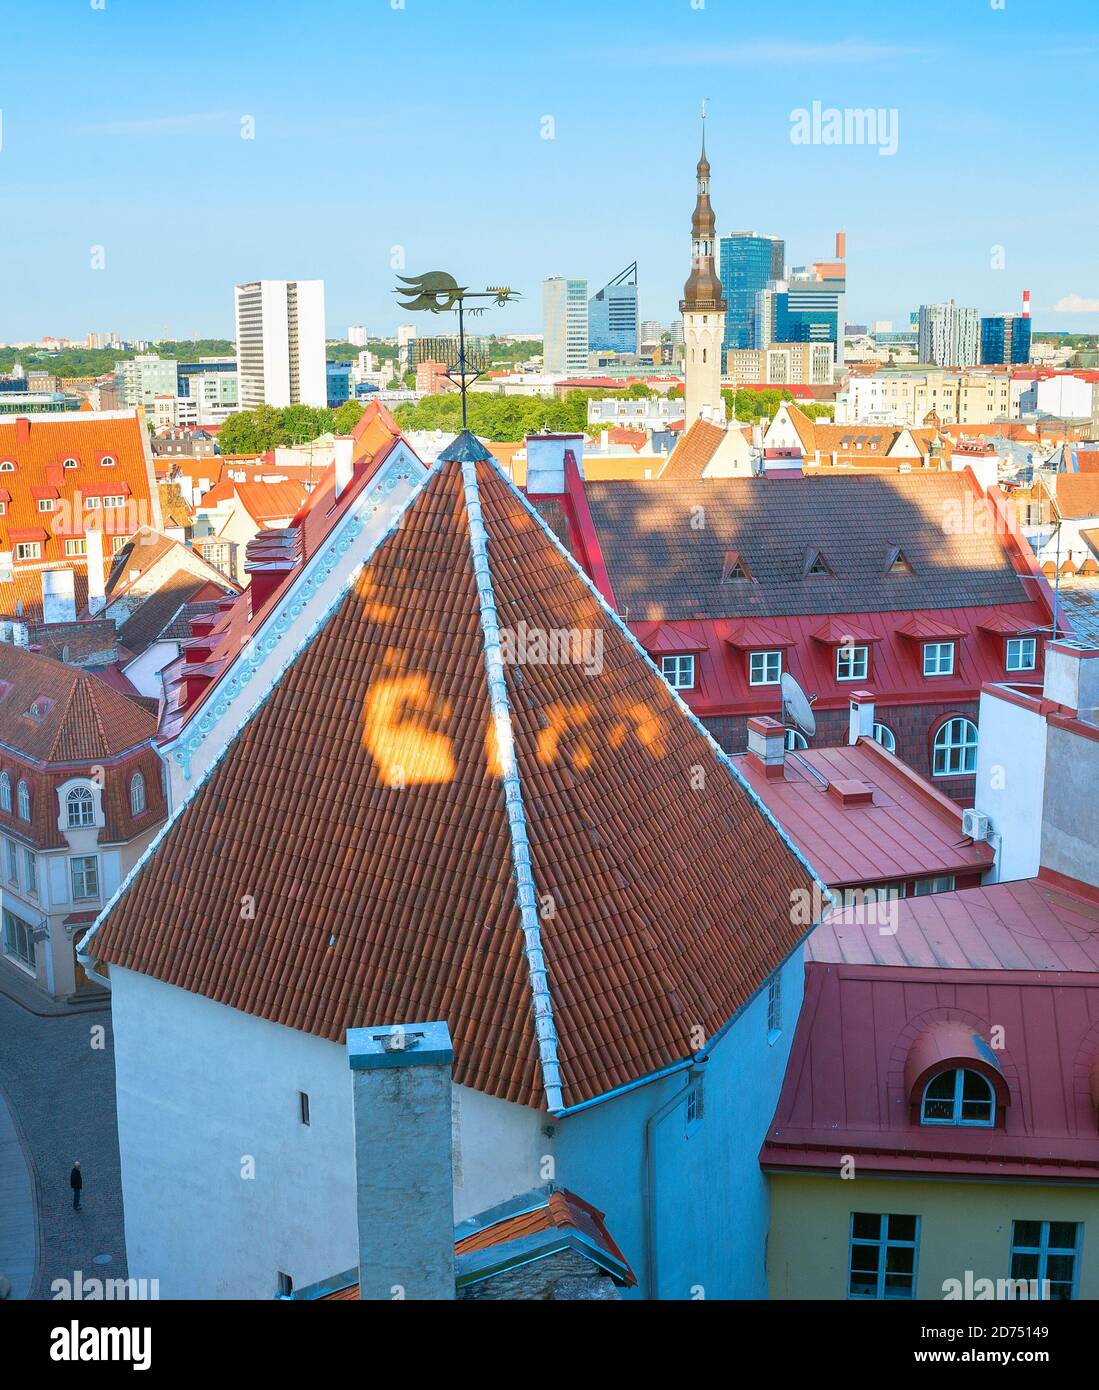 Cityscape of Tallinn Old Town at sunset, Estonia Stock Photo